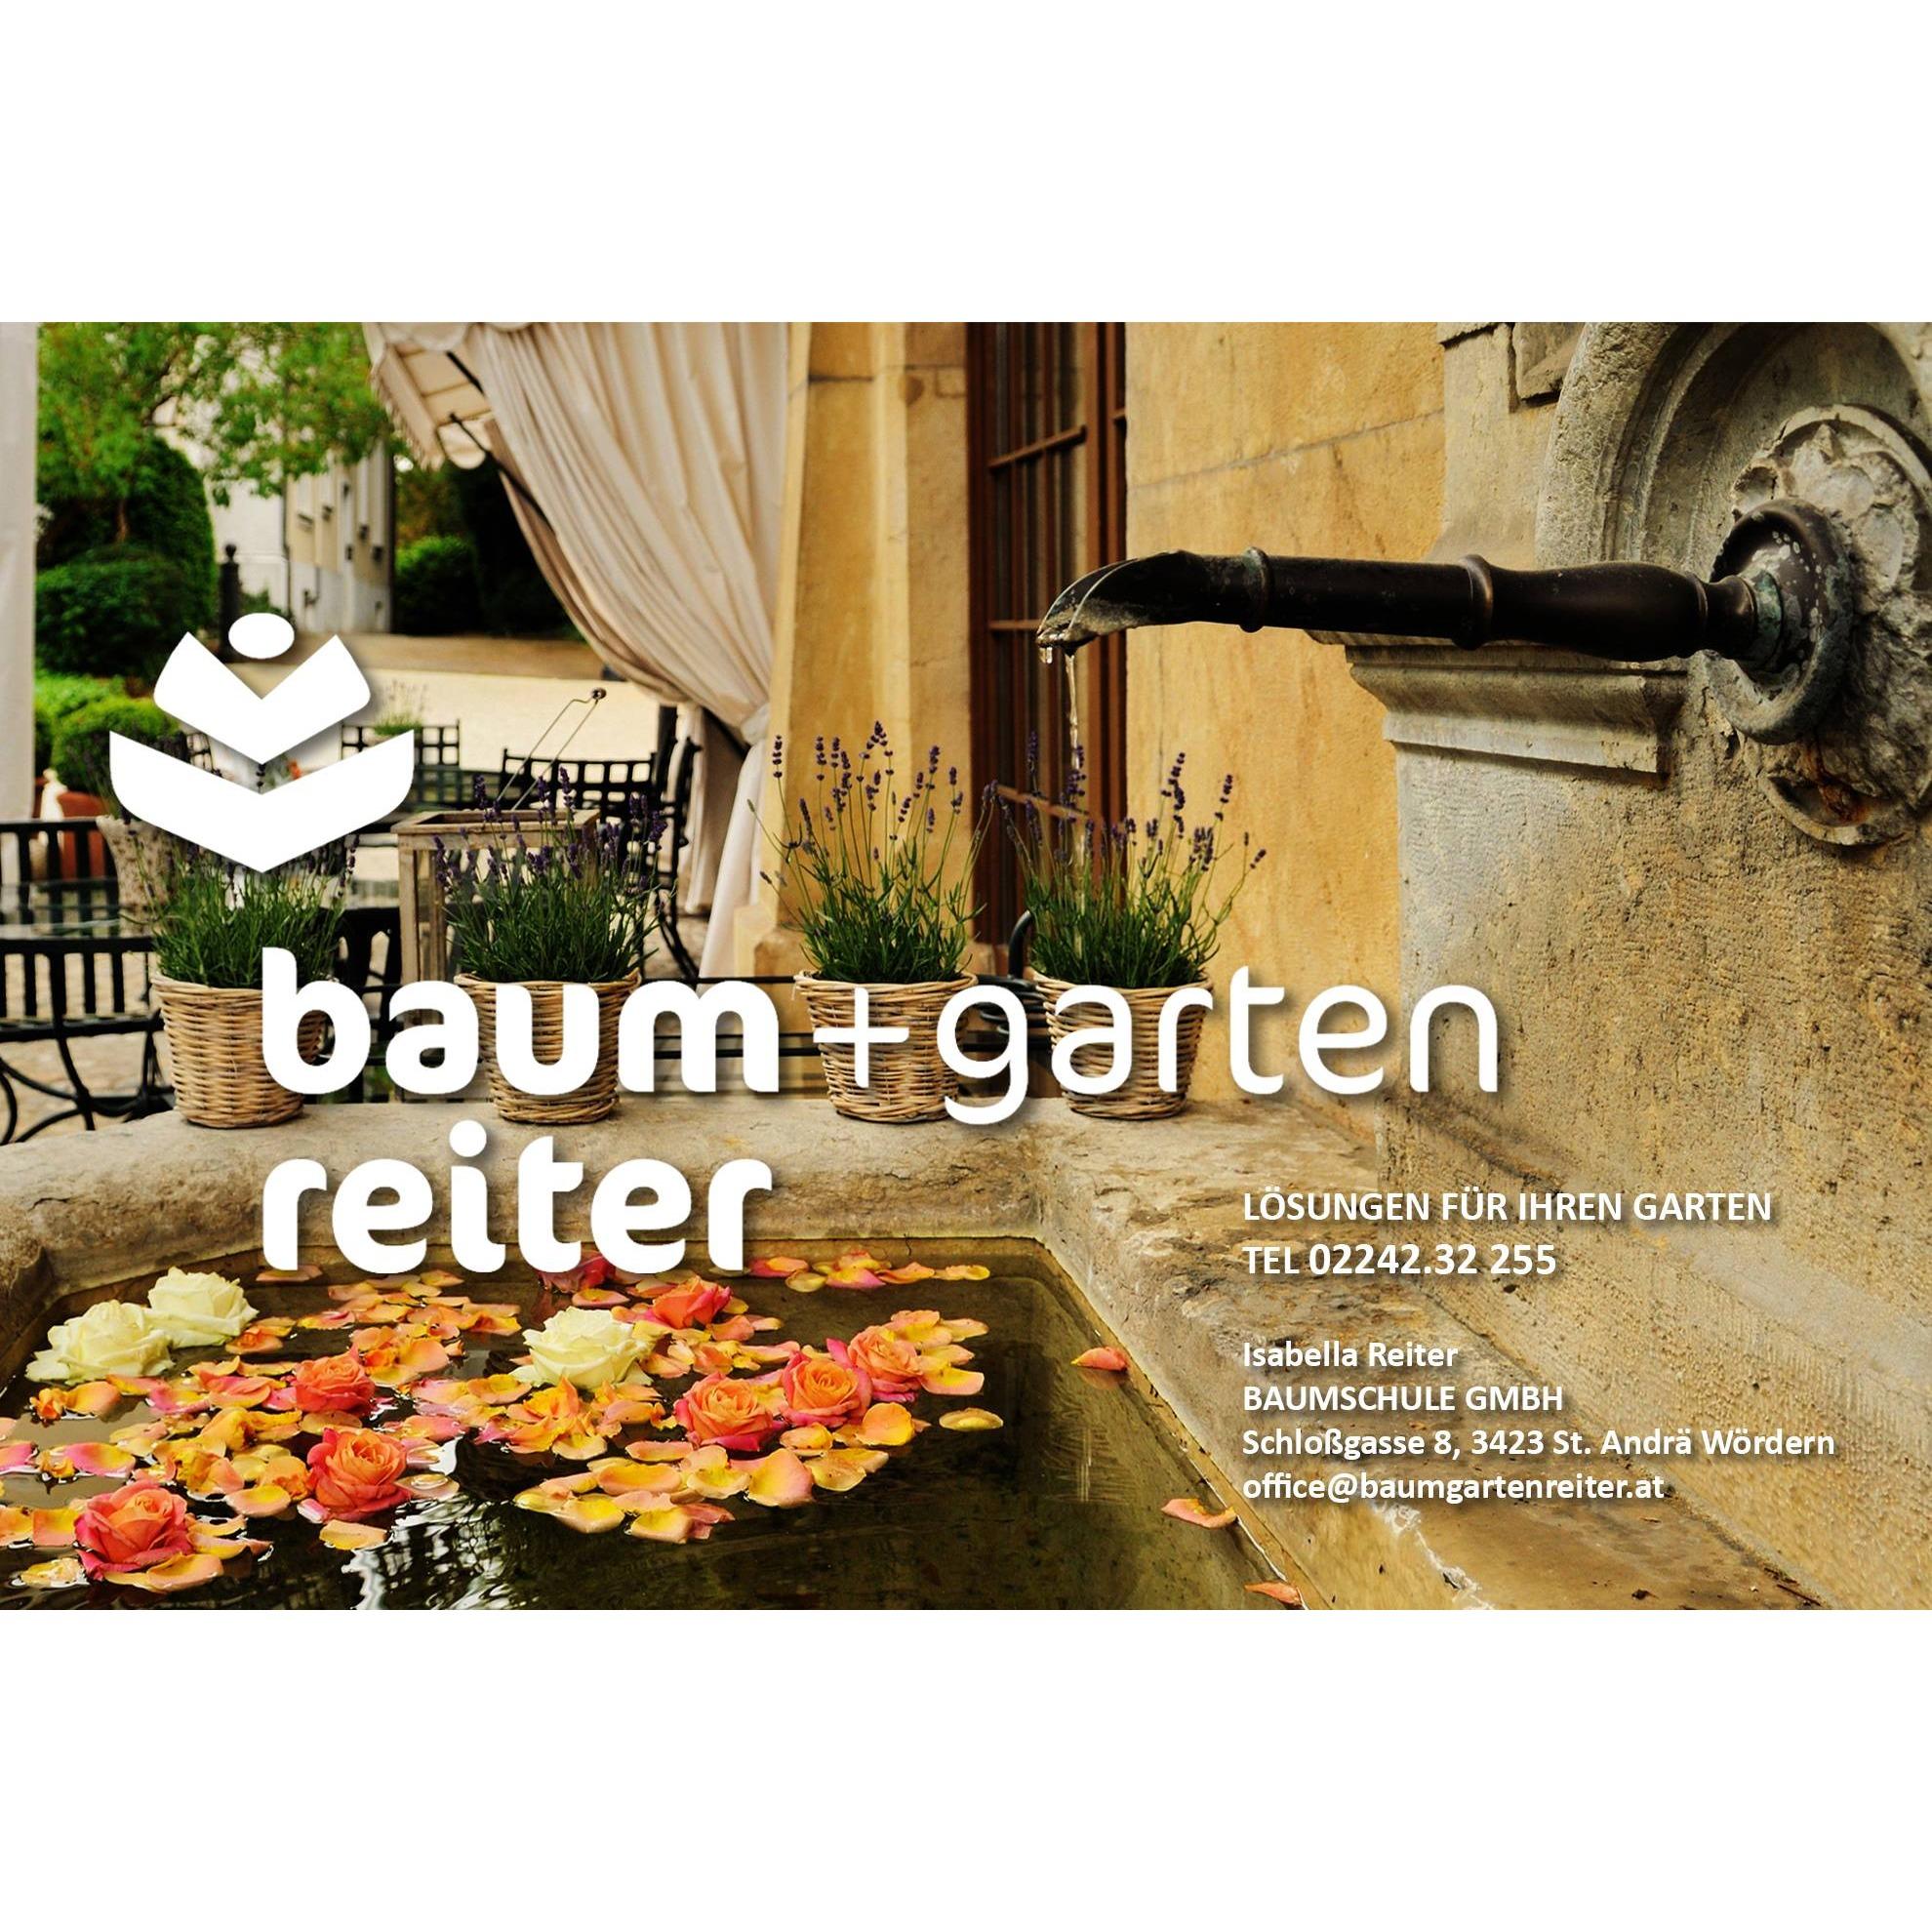 Isabella Reiter Baumschule GmbH – Baum + Garten Reiter Logo